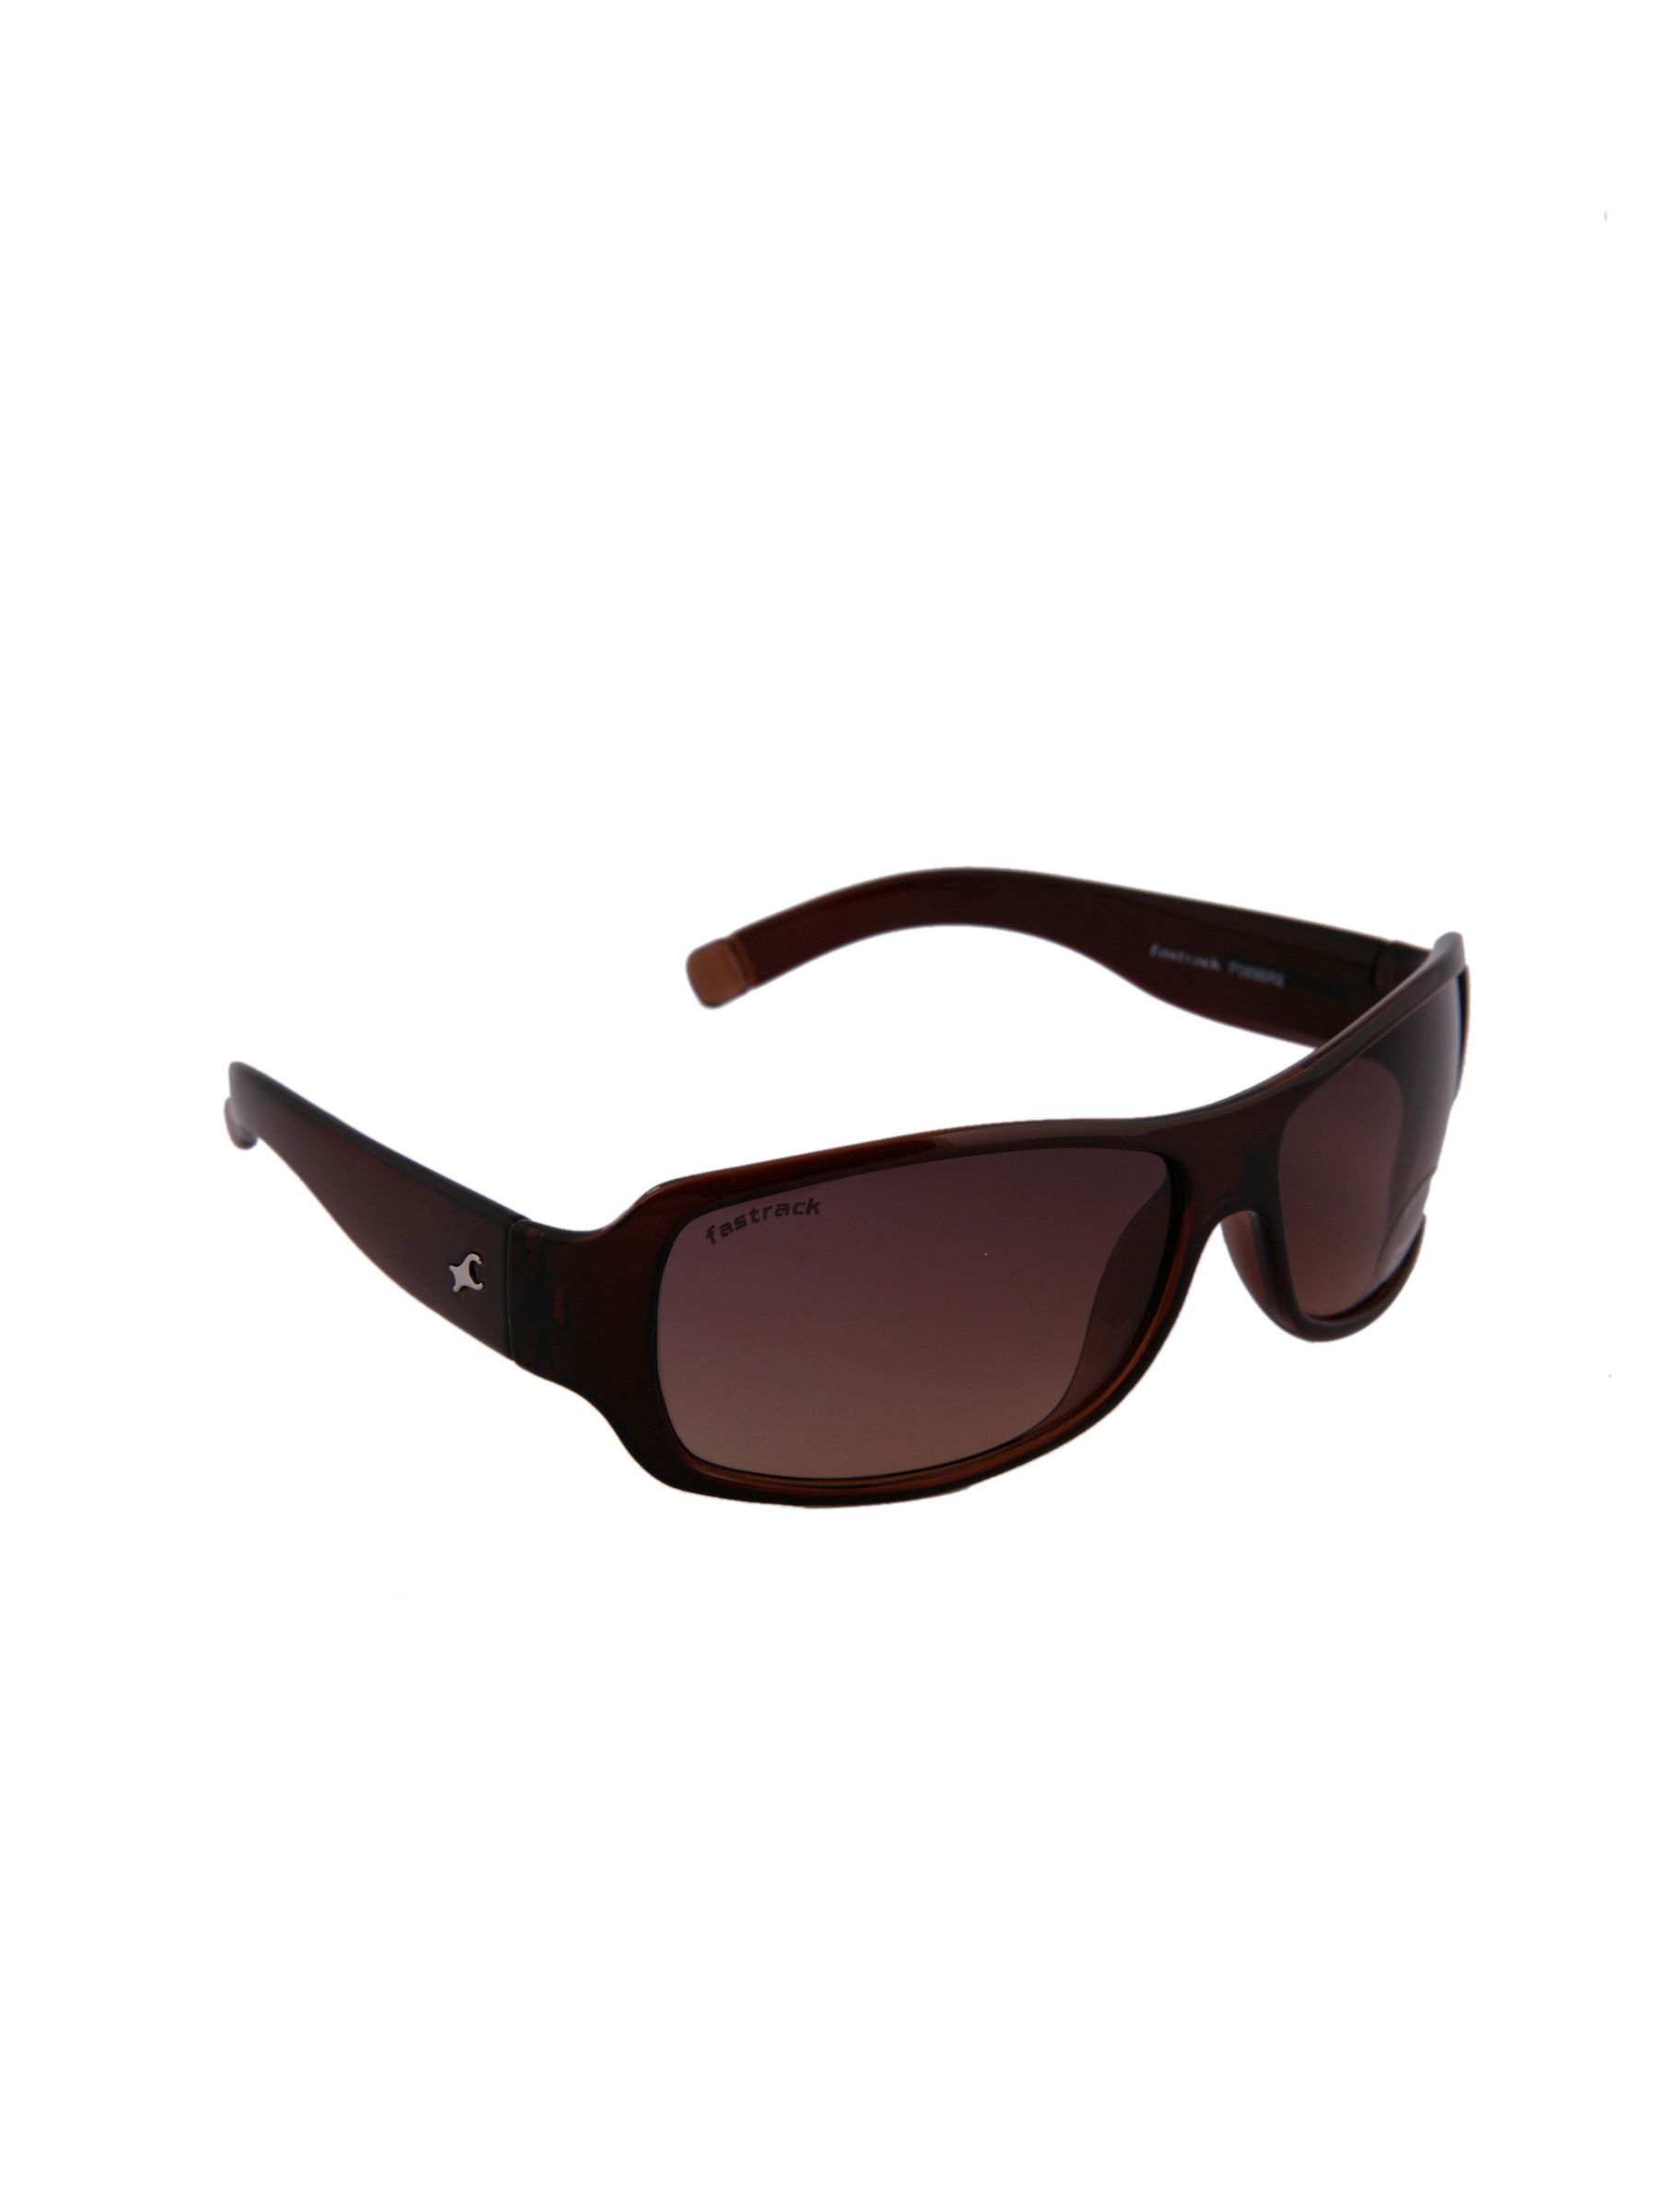 Fastrack Unisex Sunglasses P089BR2 Price in India